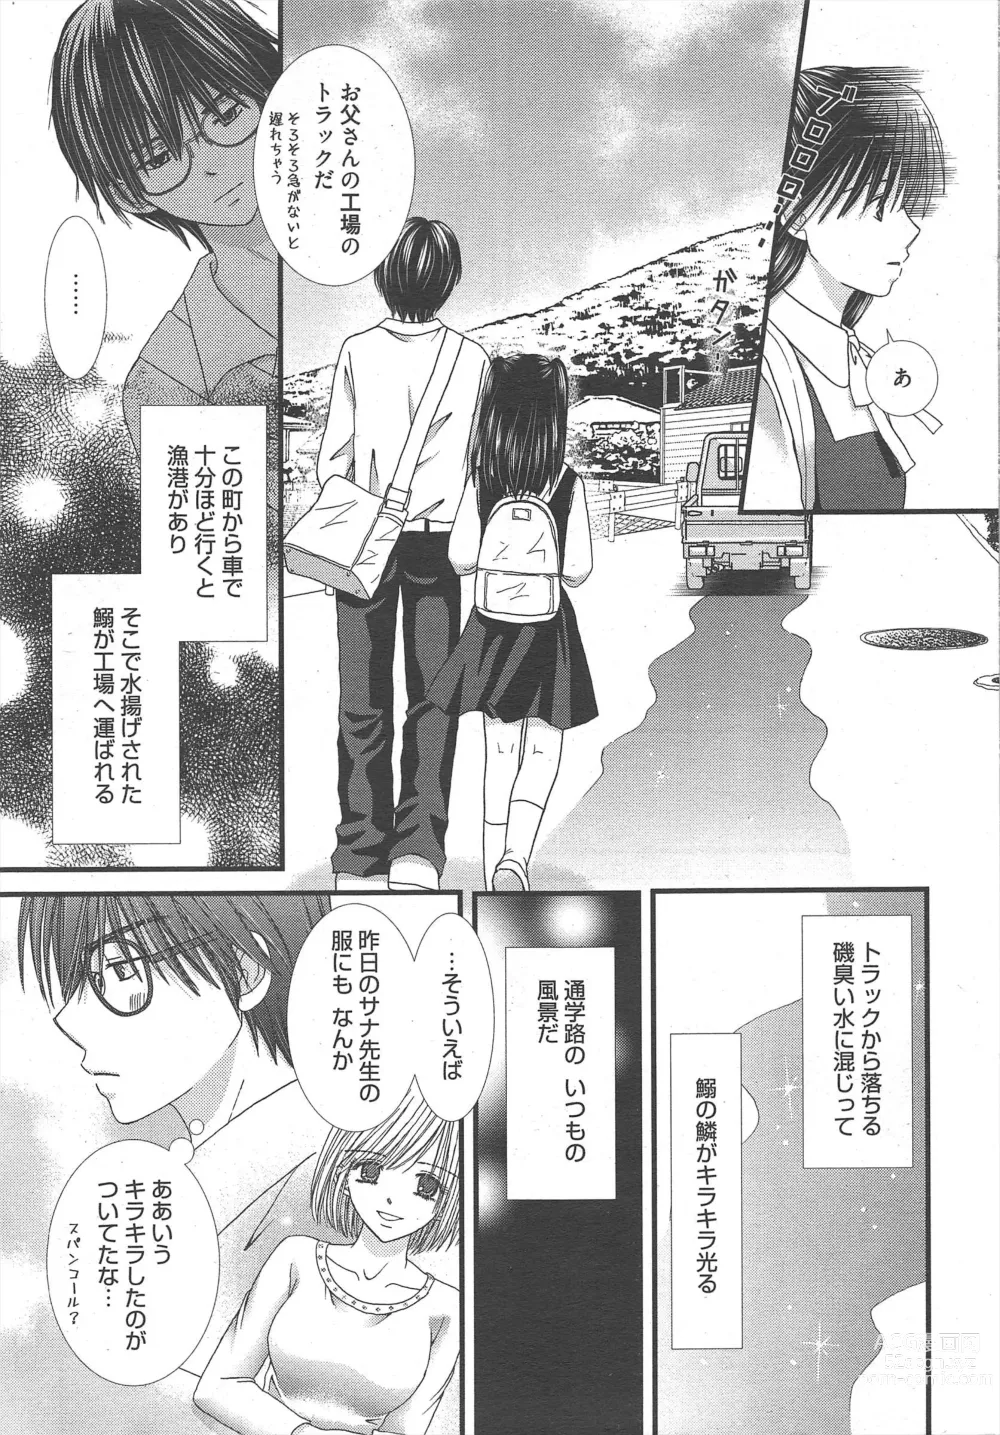 Page 13 of manga Manga Bangaichi 2012-12